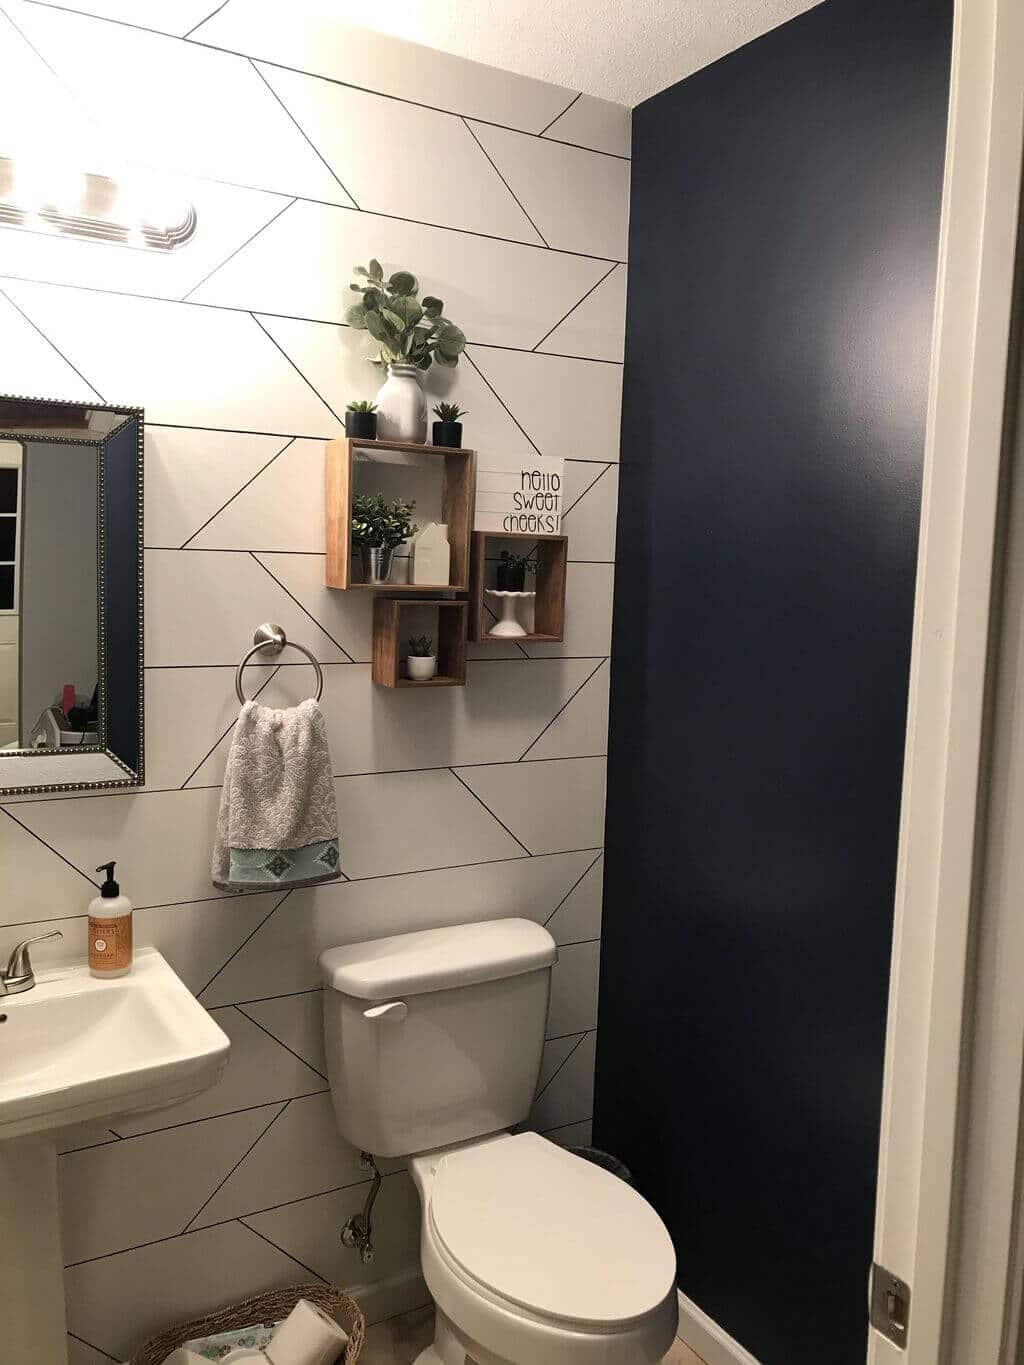 wall decor for bathroom